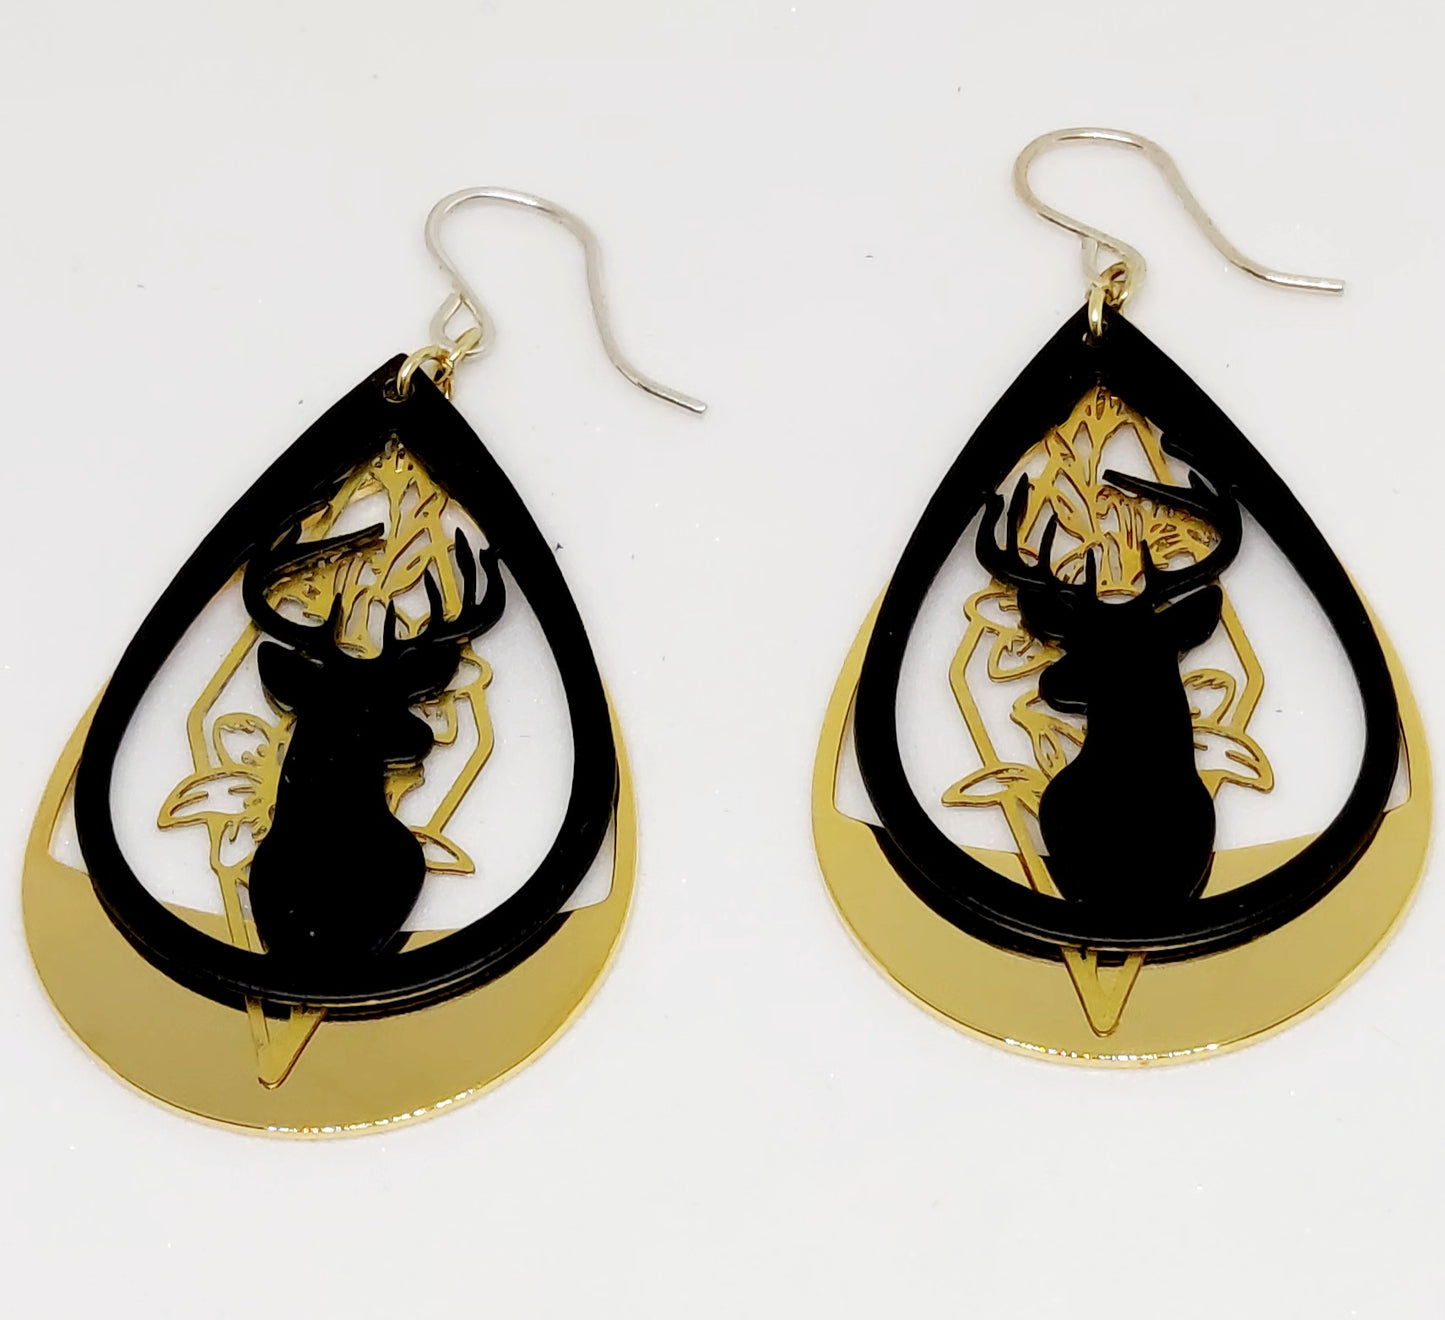 Shadow Deer Earrings